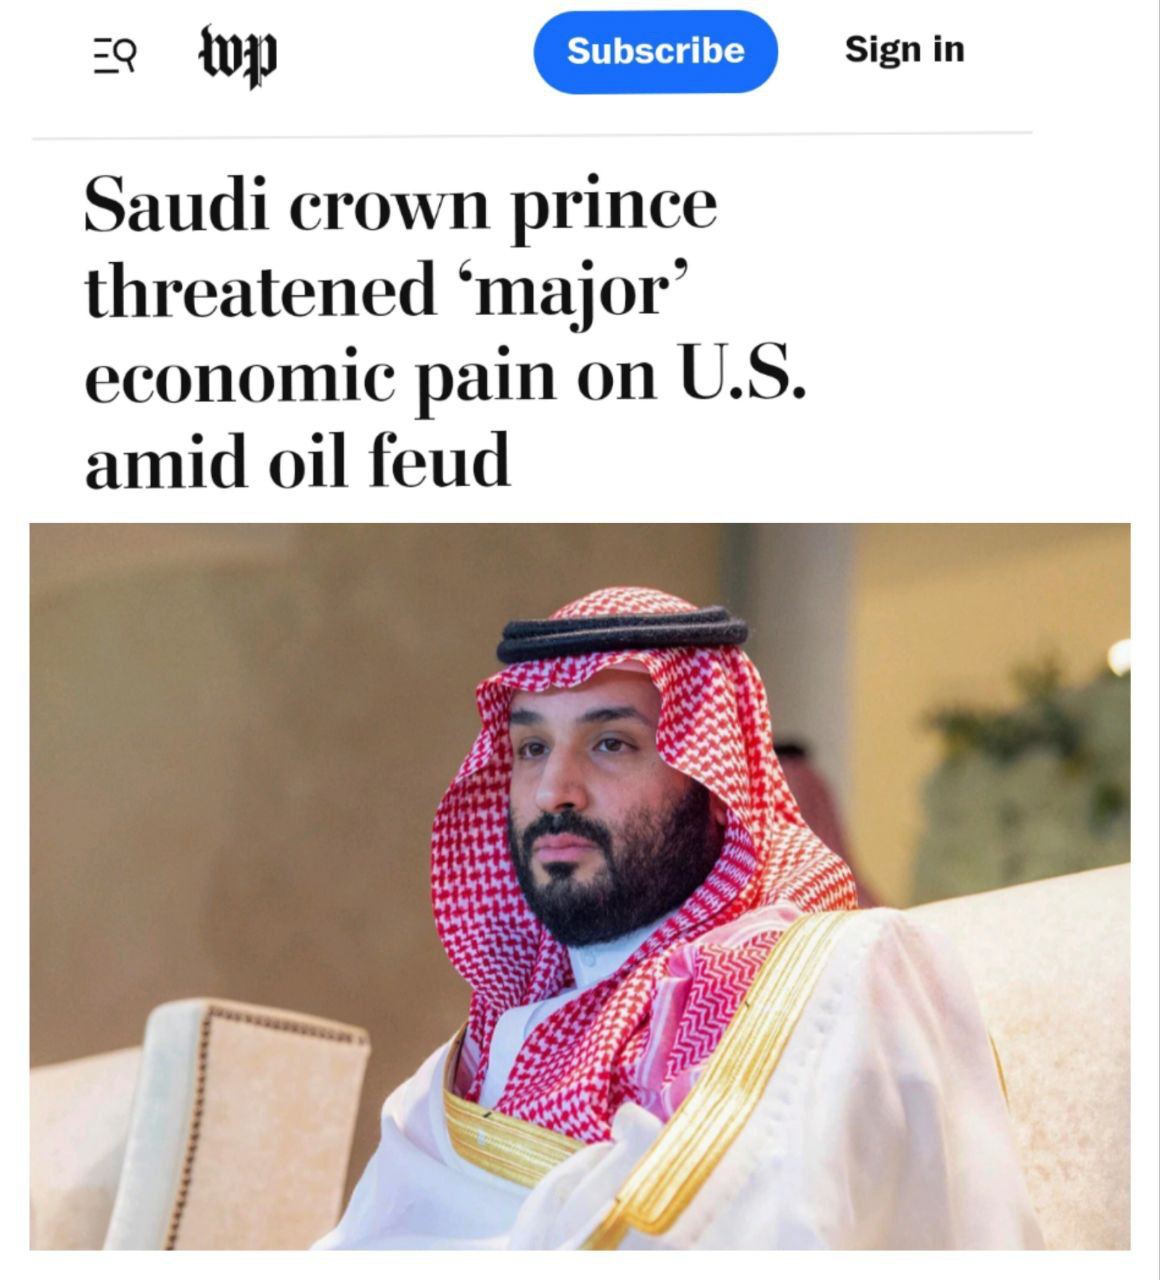 Саудовская аравия сейчас